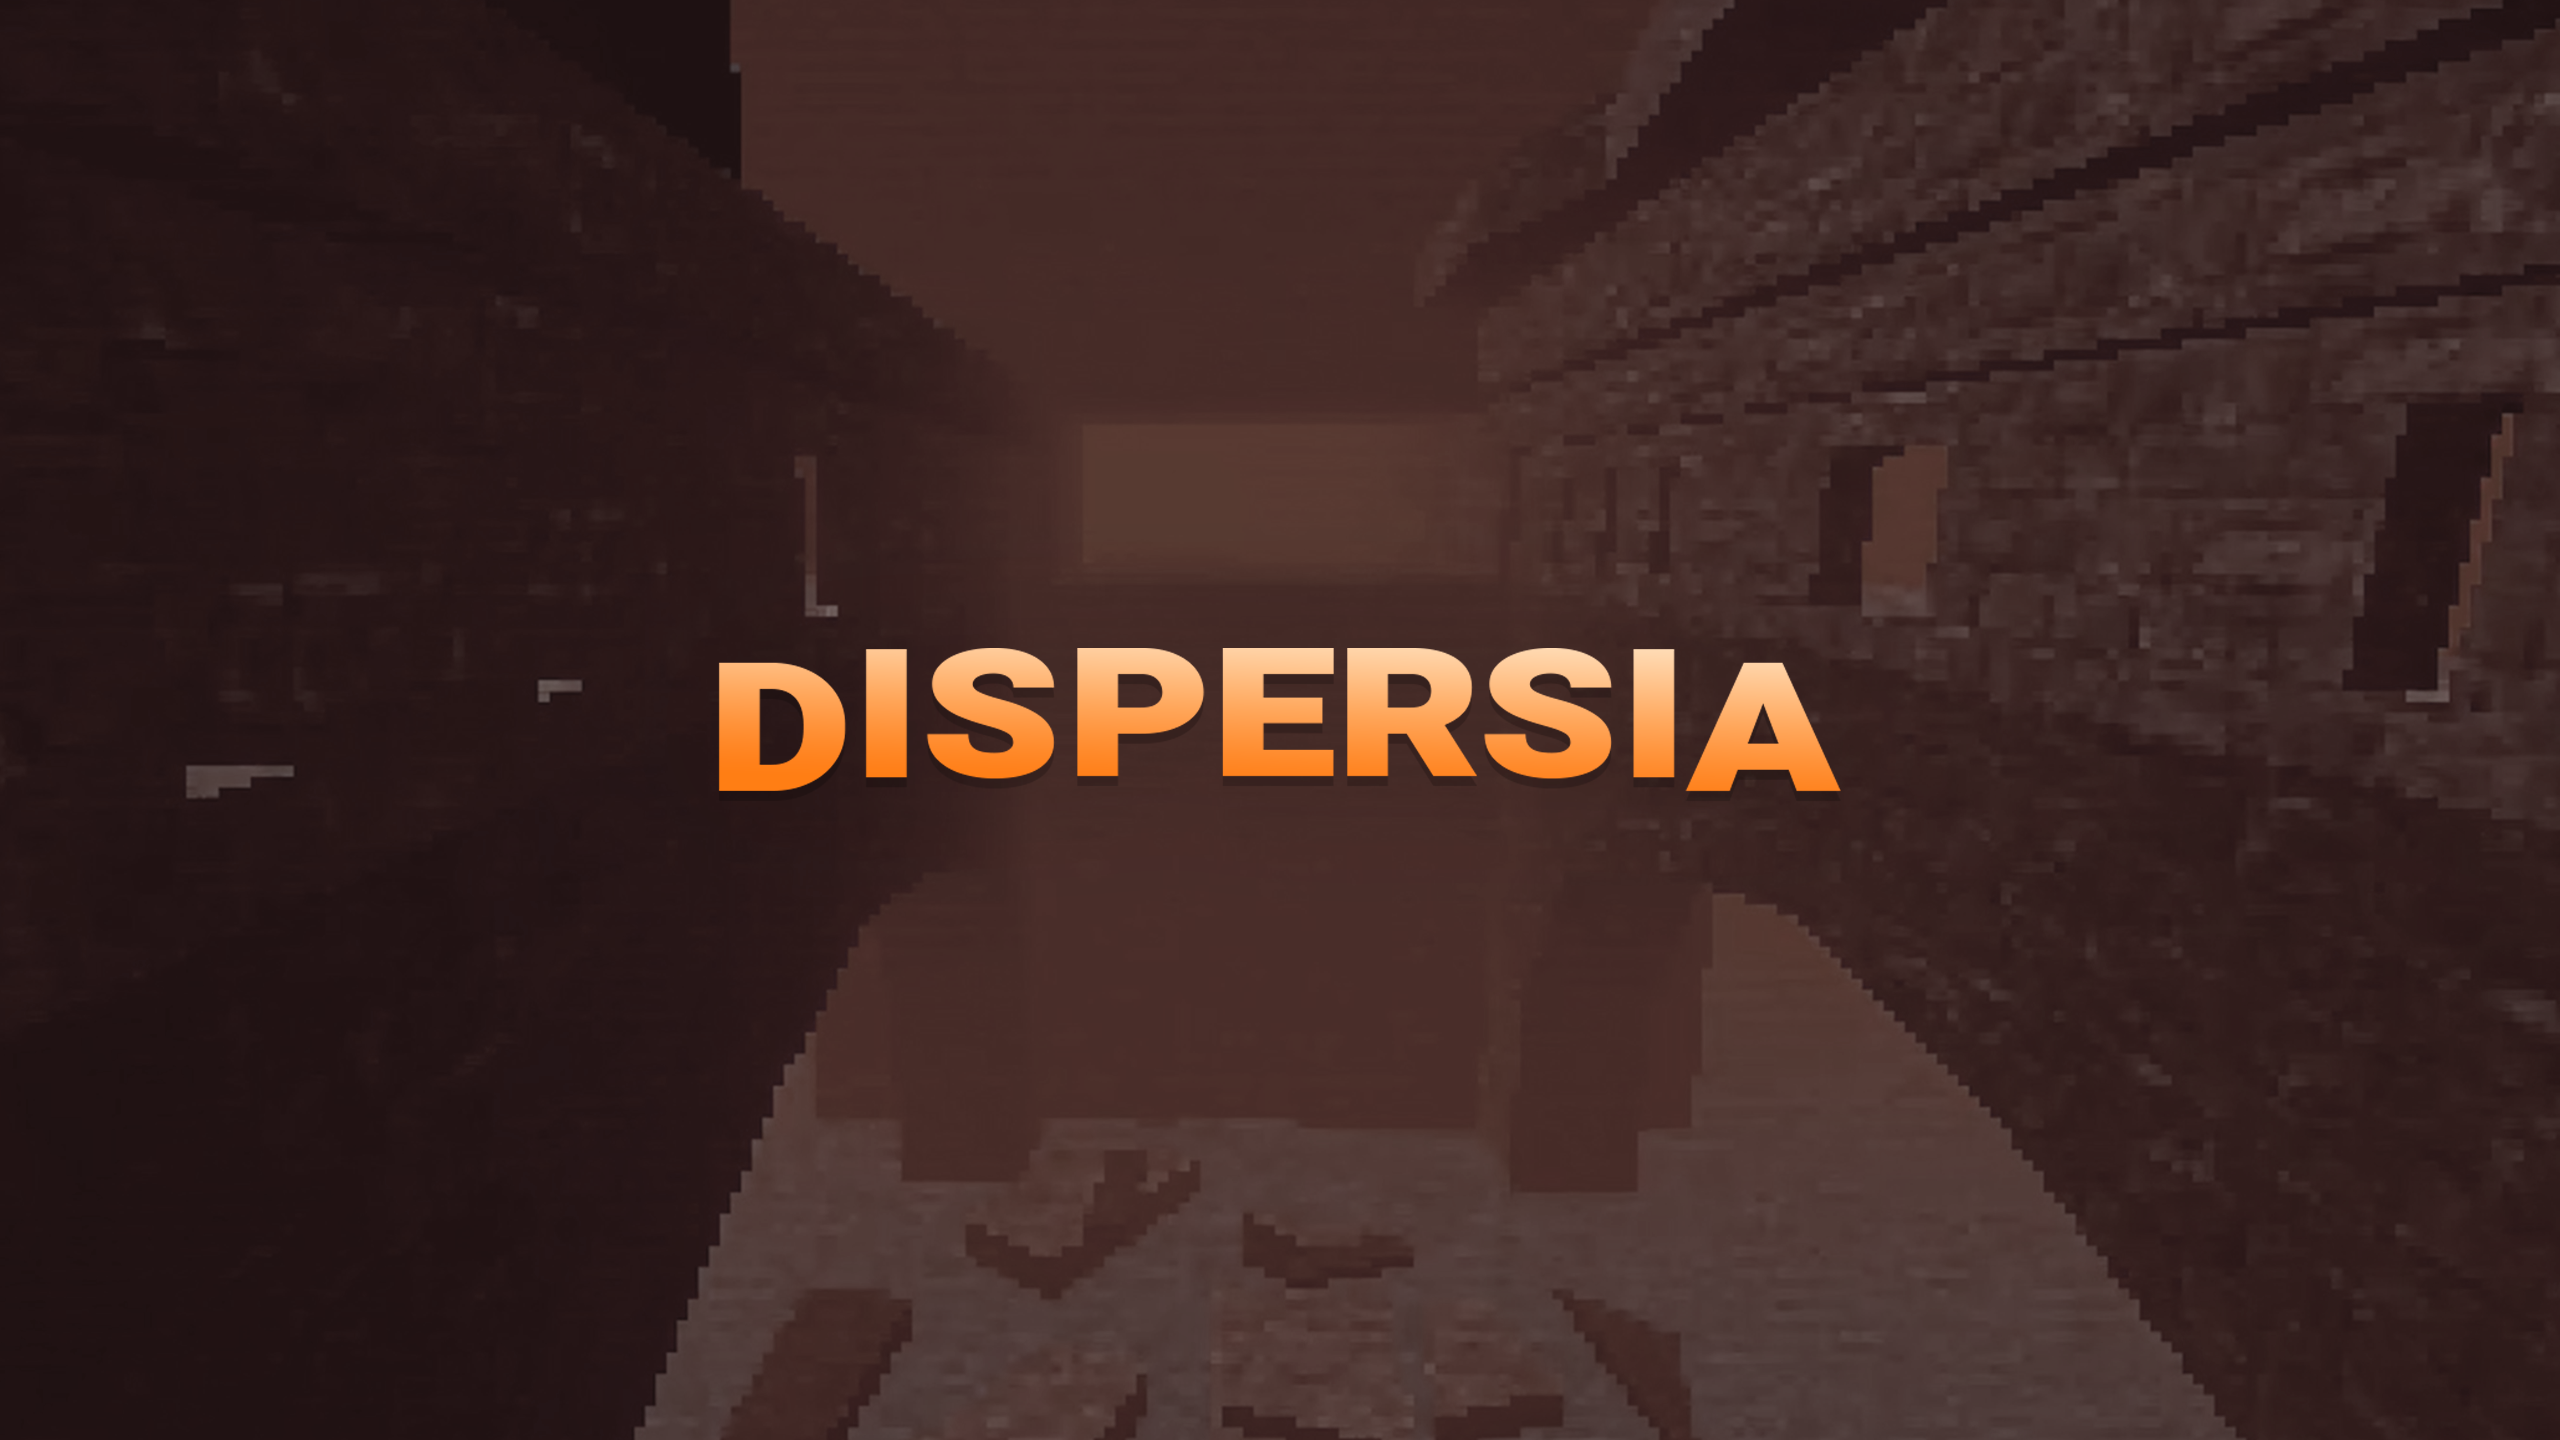 Dispersia